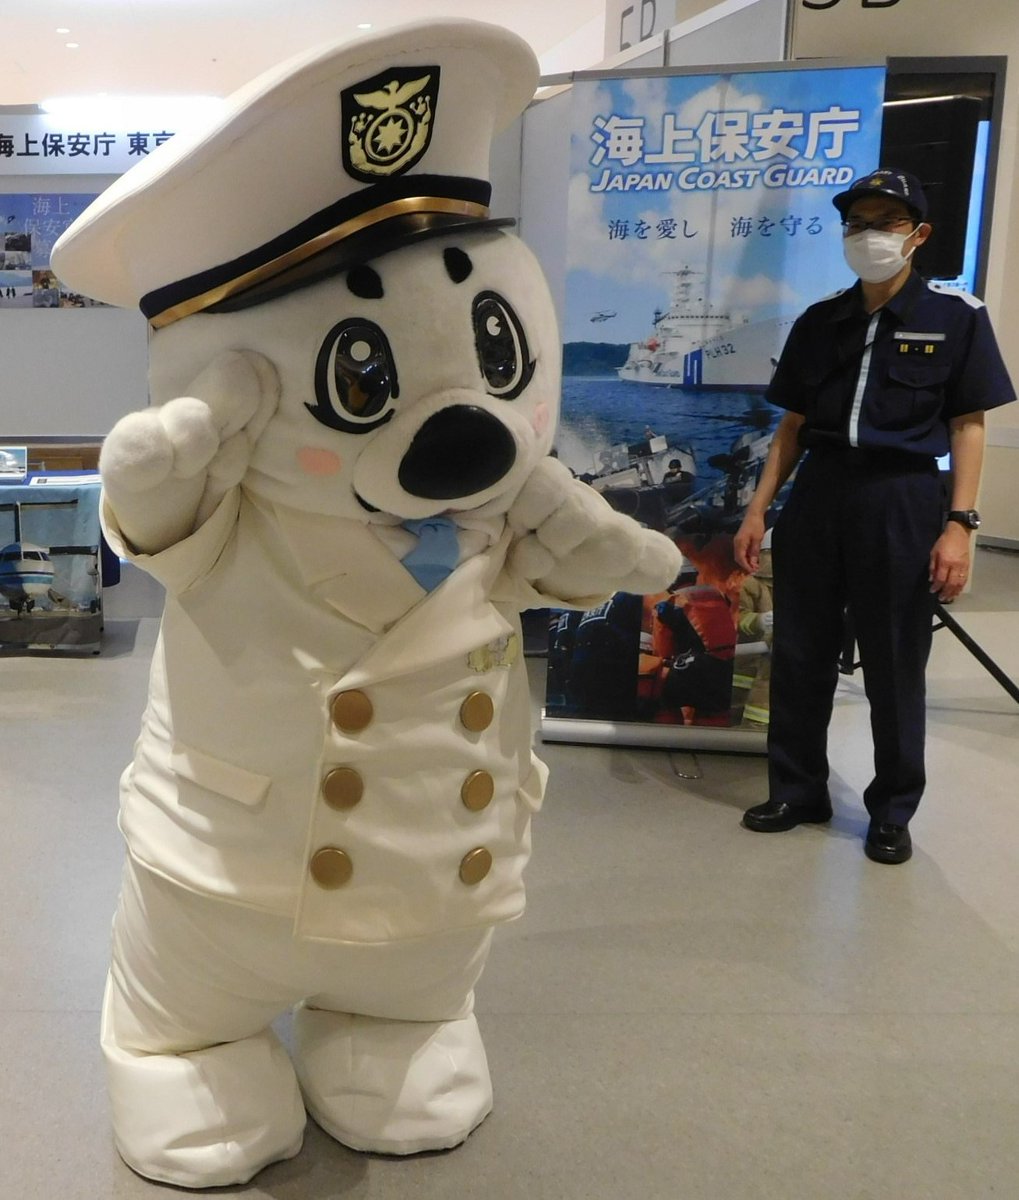 今年も「 #東京みなと祭 」に出展します！ ５月１８日（土）、１９日（日）１０：００～１７：００ #東京国際クルーズターミナル をメイン会場として「東京みなと祭」が開催されます。 #東京海上保安部 も「 #うみまる 」と一緒に盛り上げますので、是非遊びに来てくださいね♪　 #海上保安庁